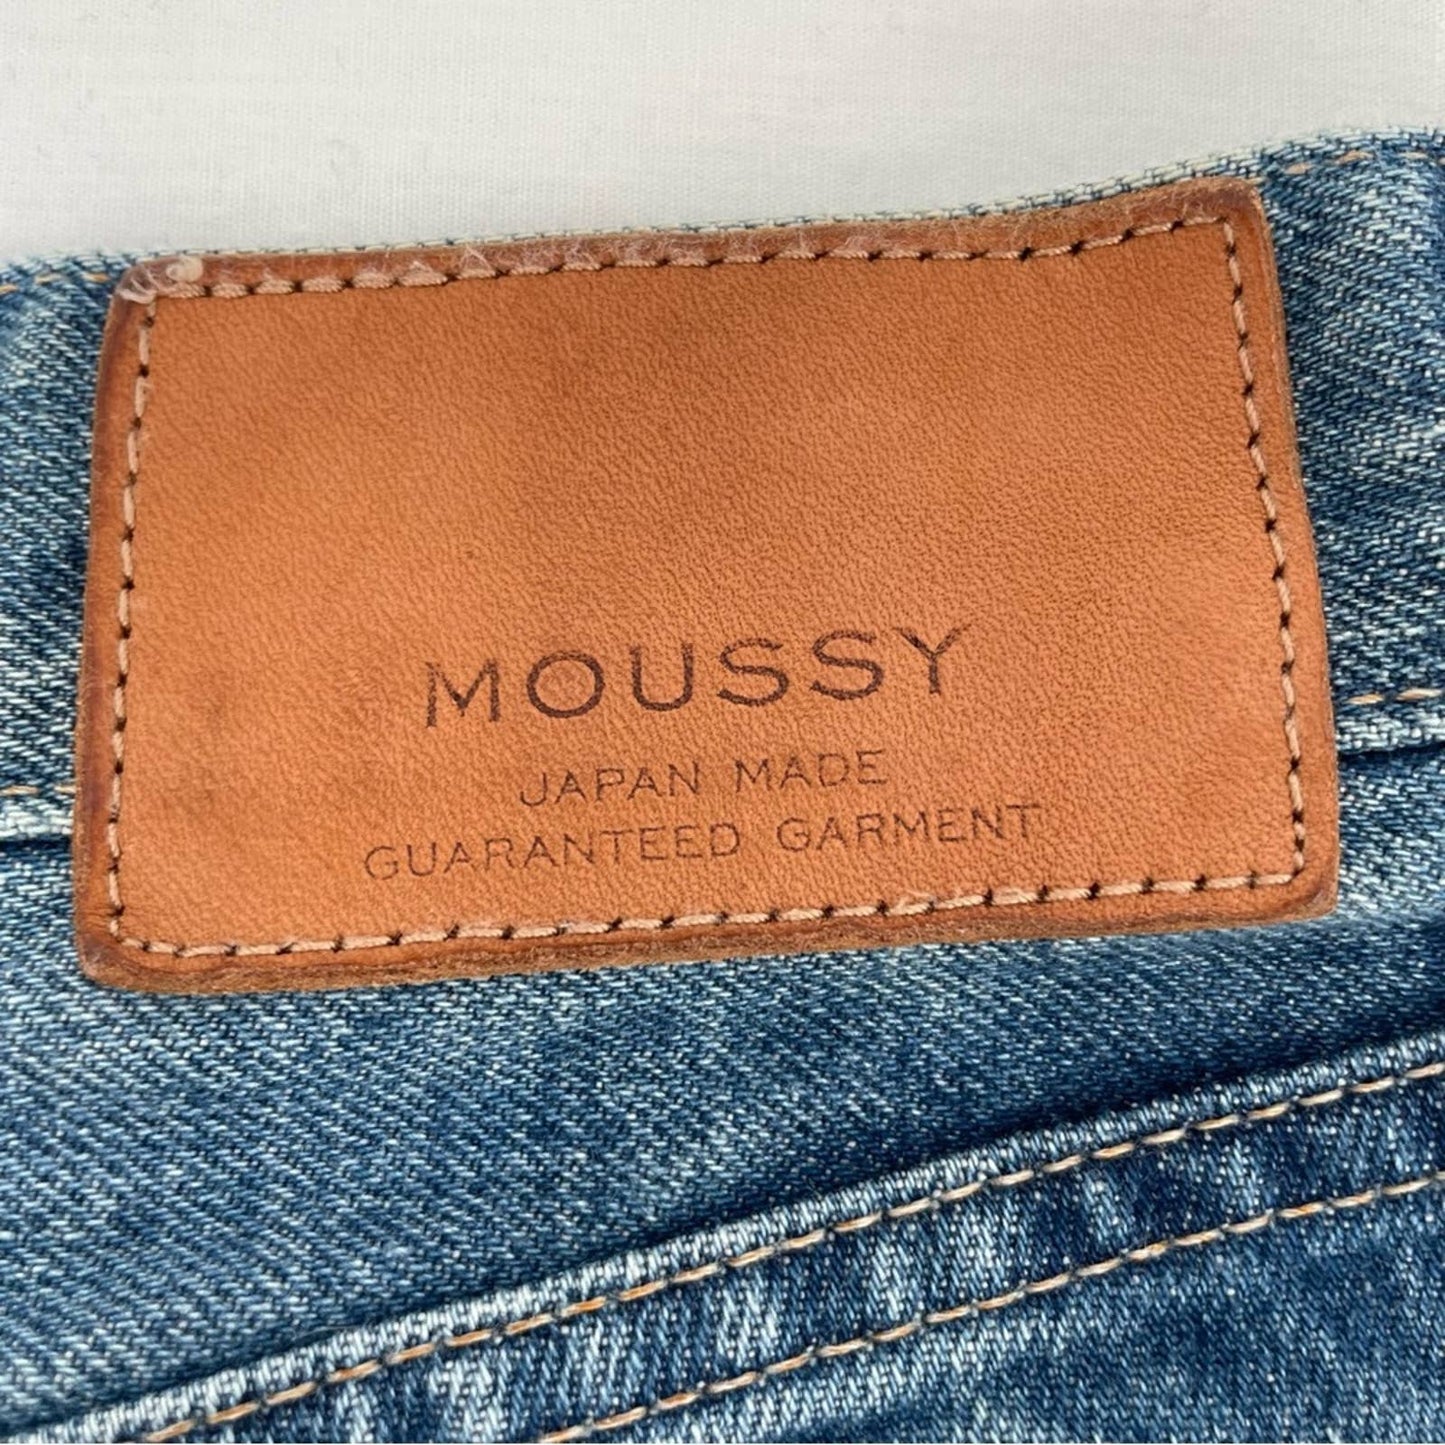 Moussy Aberdeen DIY Cutoff Jean Shorts Raw Hem Mid Wash Blue Distressed Style 0108AC11-5790-1 Size 29